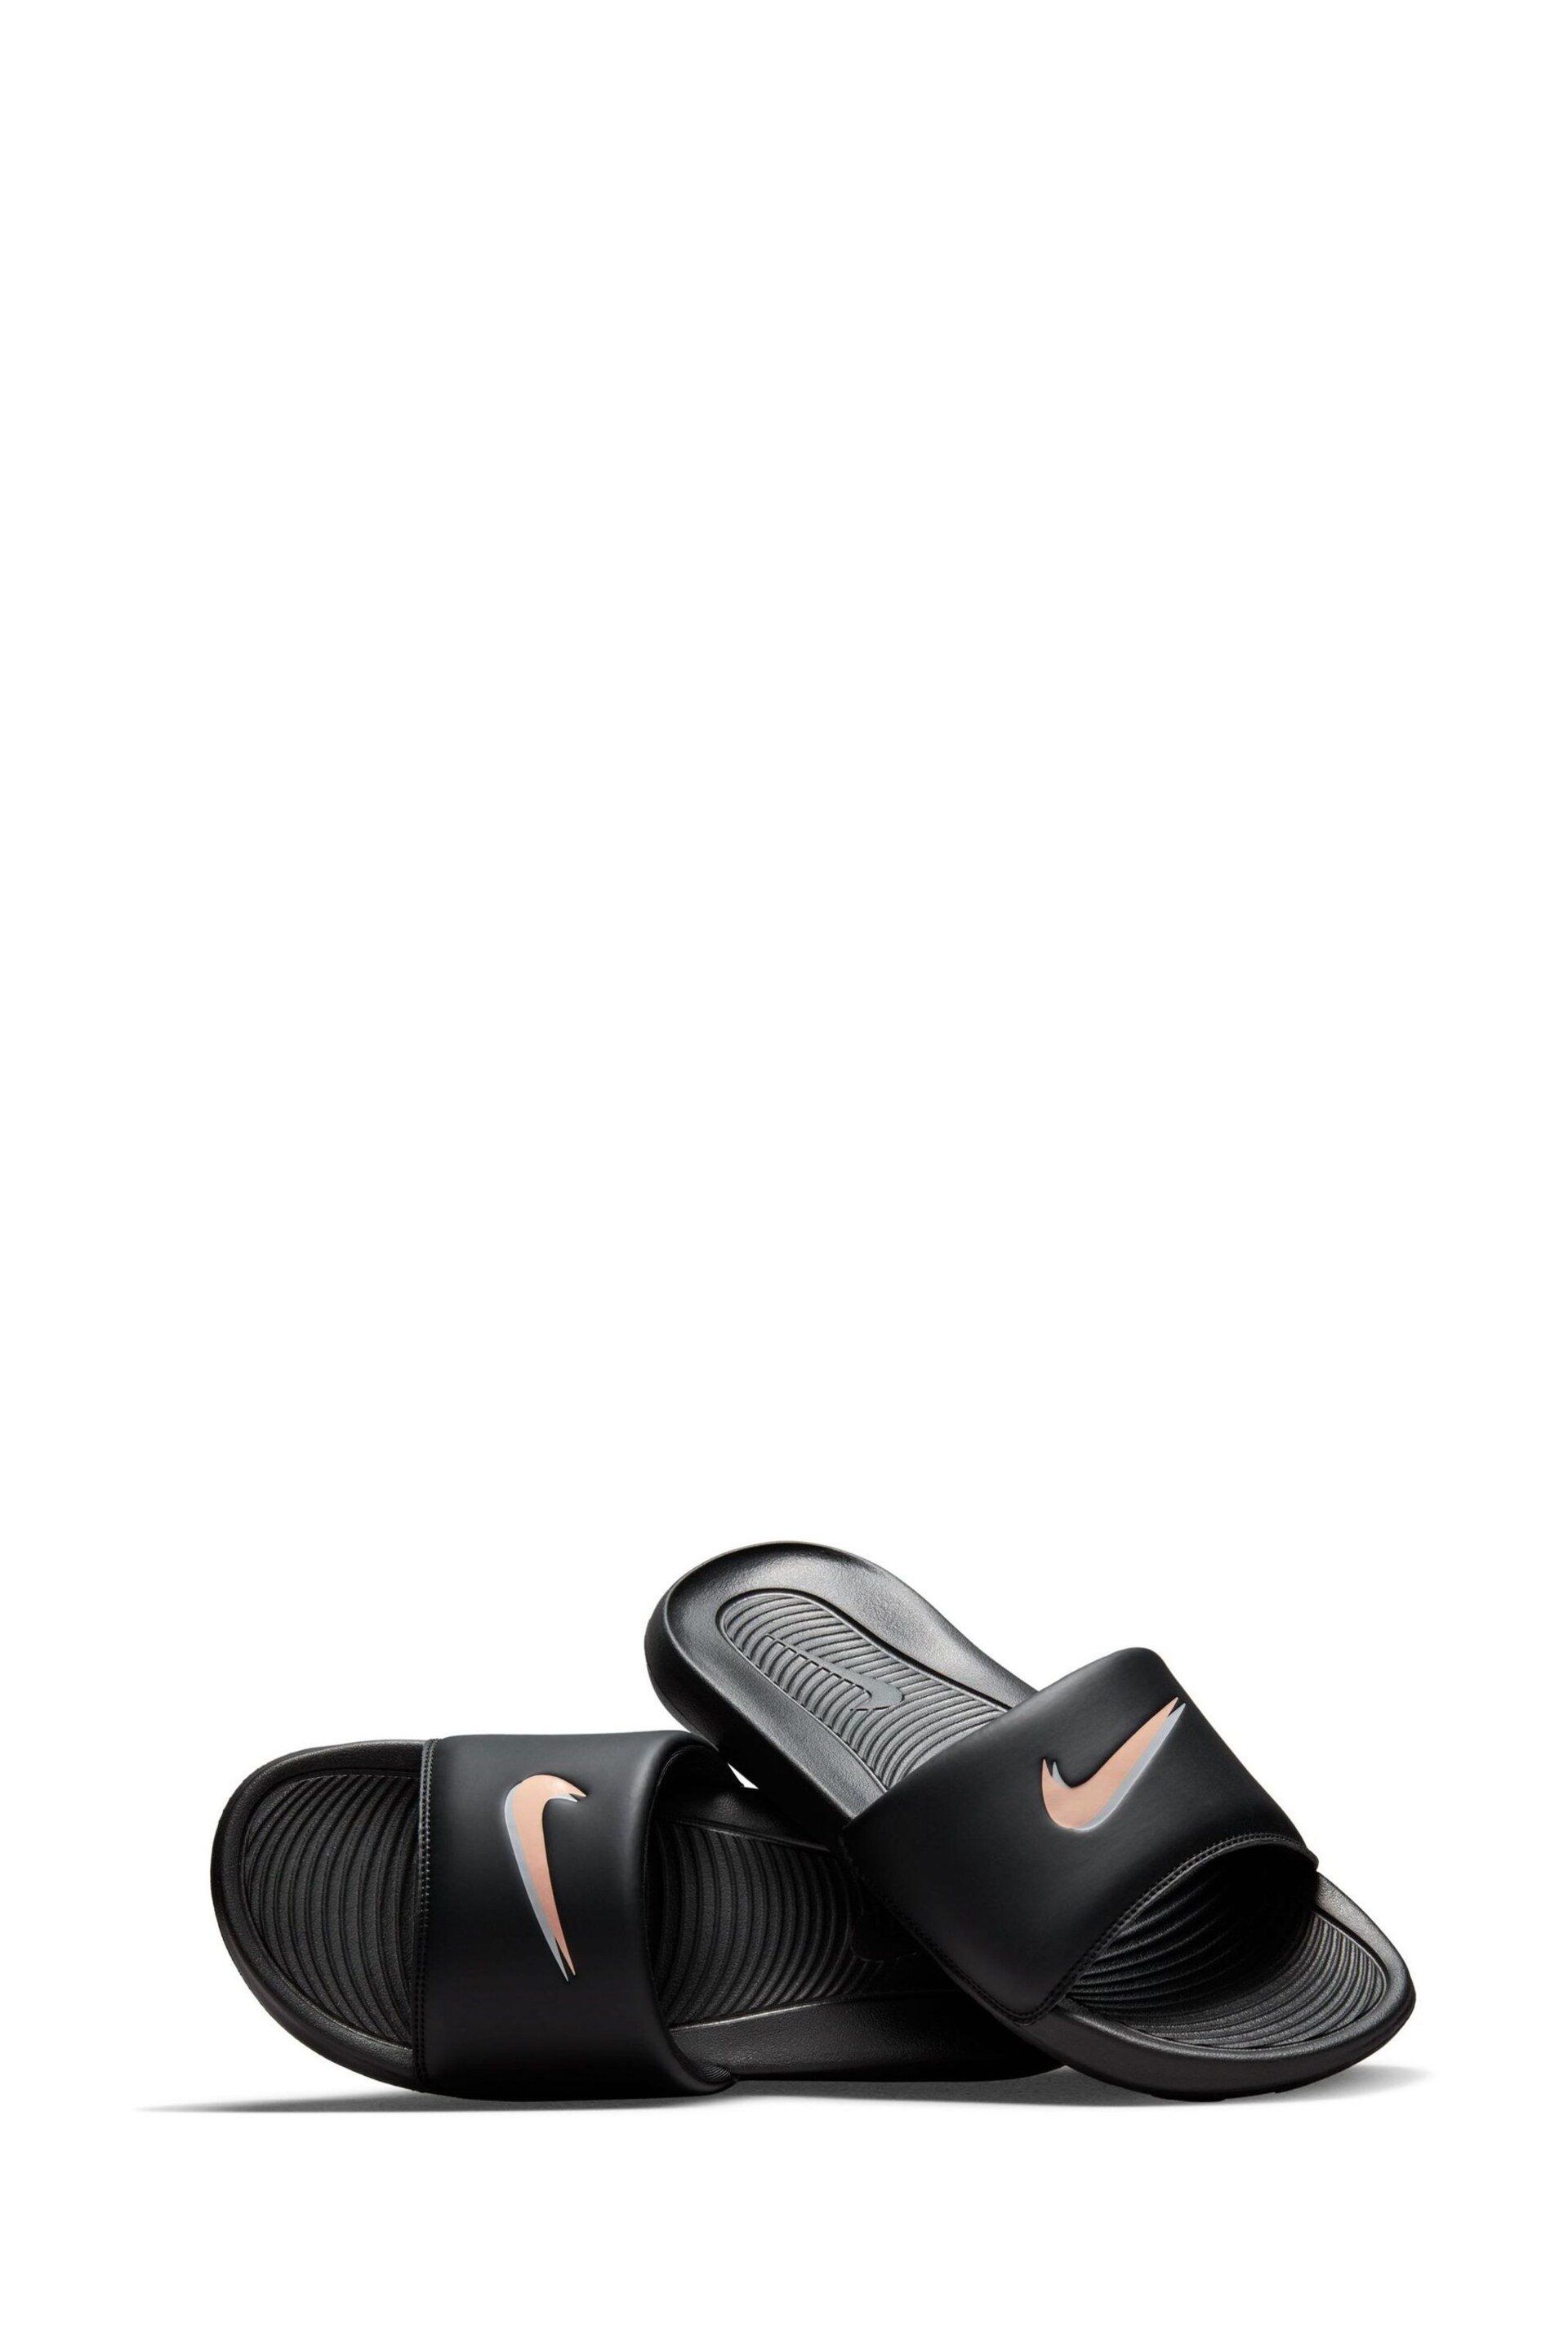 Nike Coal Black Victori One Sliders - Image 4 of 7